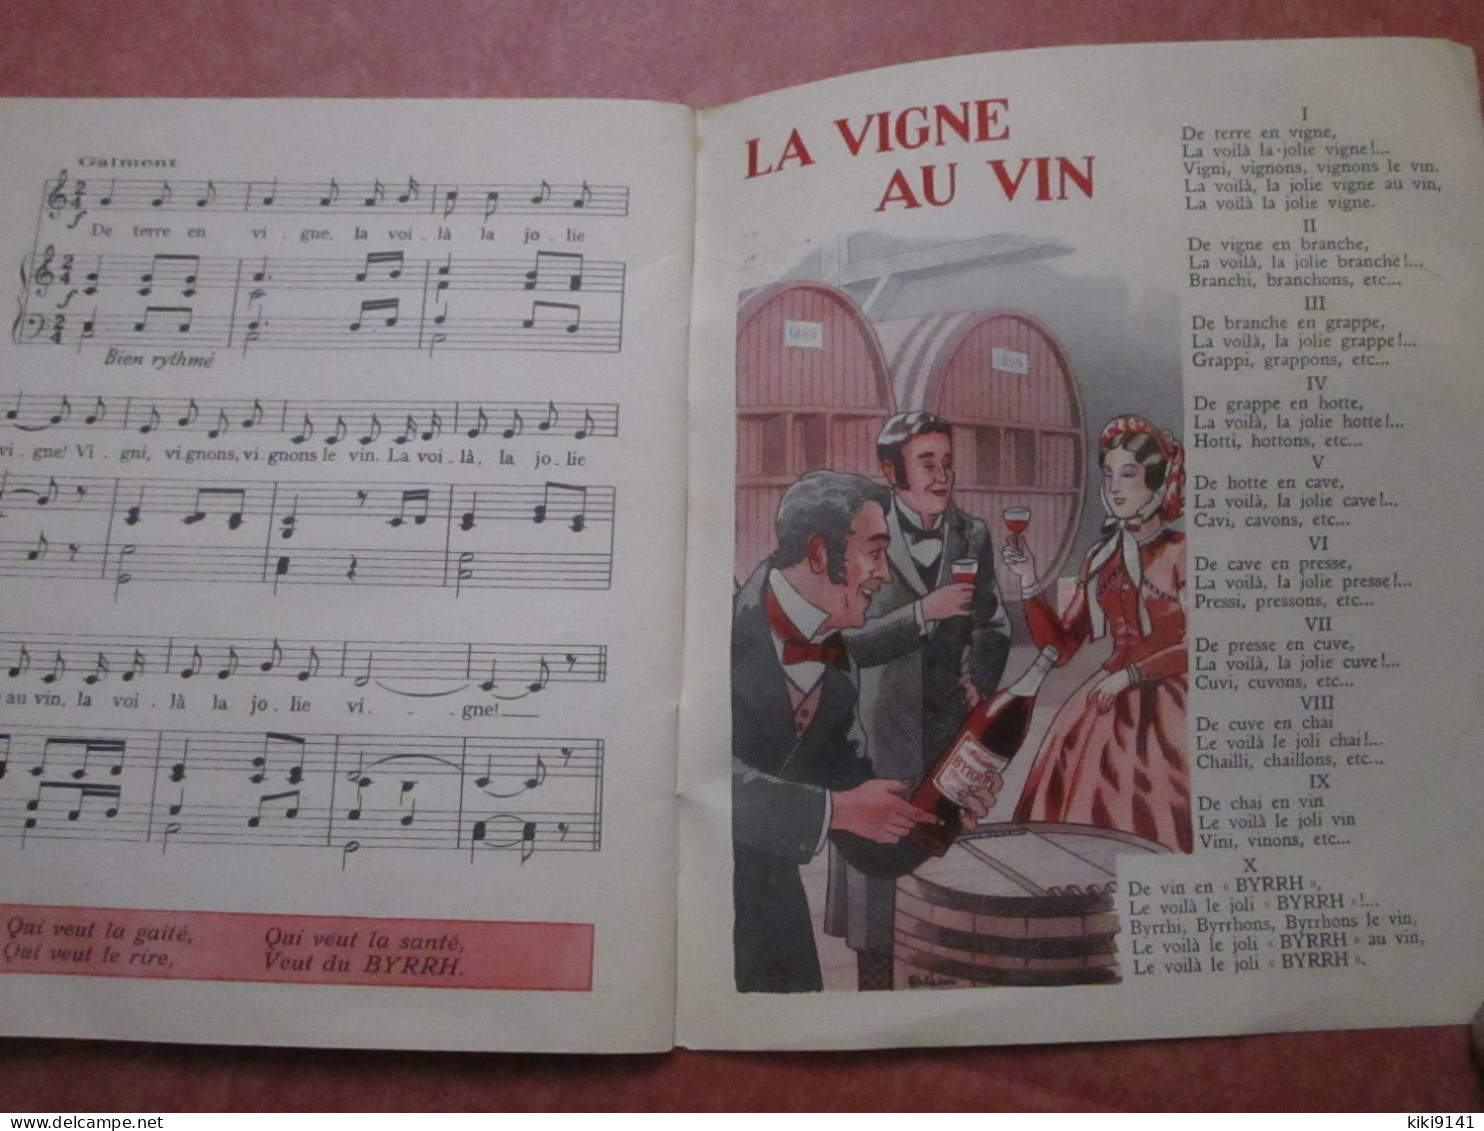 BYRRH - Chantons le Vin - Chansons à boire d'Hier et d'Aujourd'hui (32 pages)